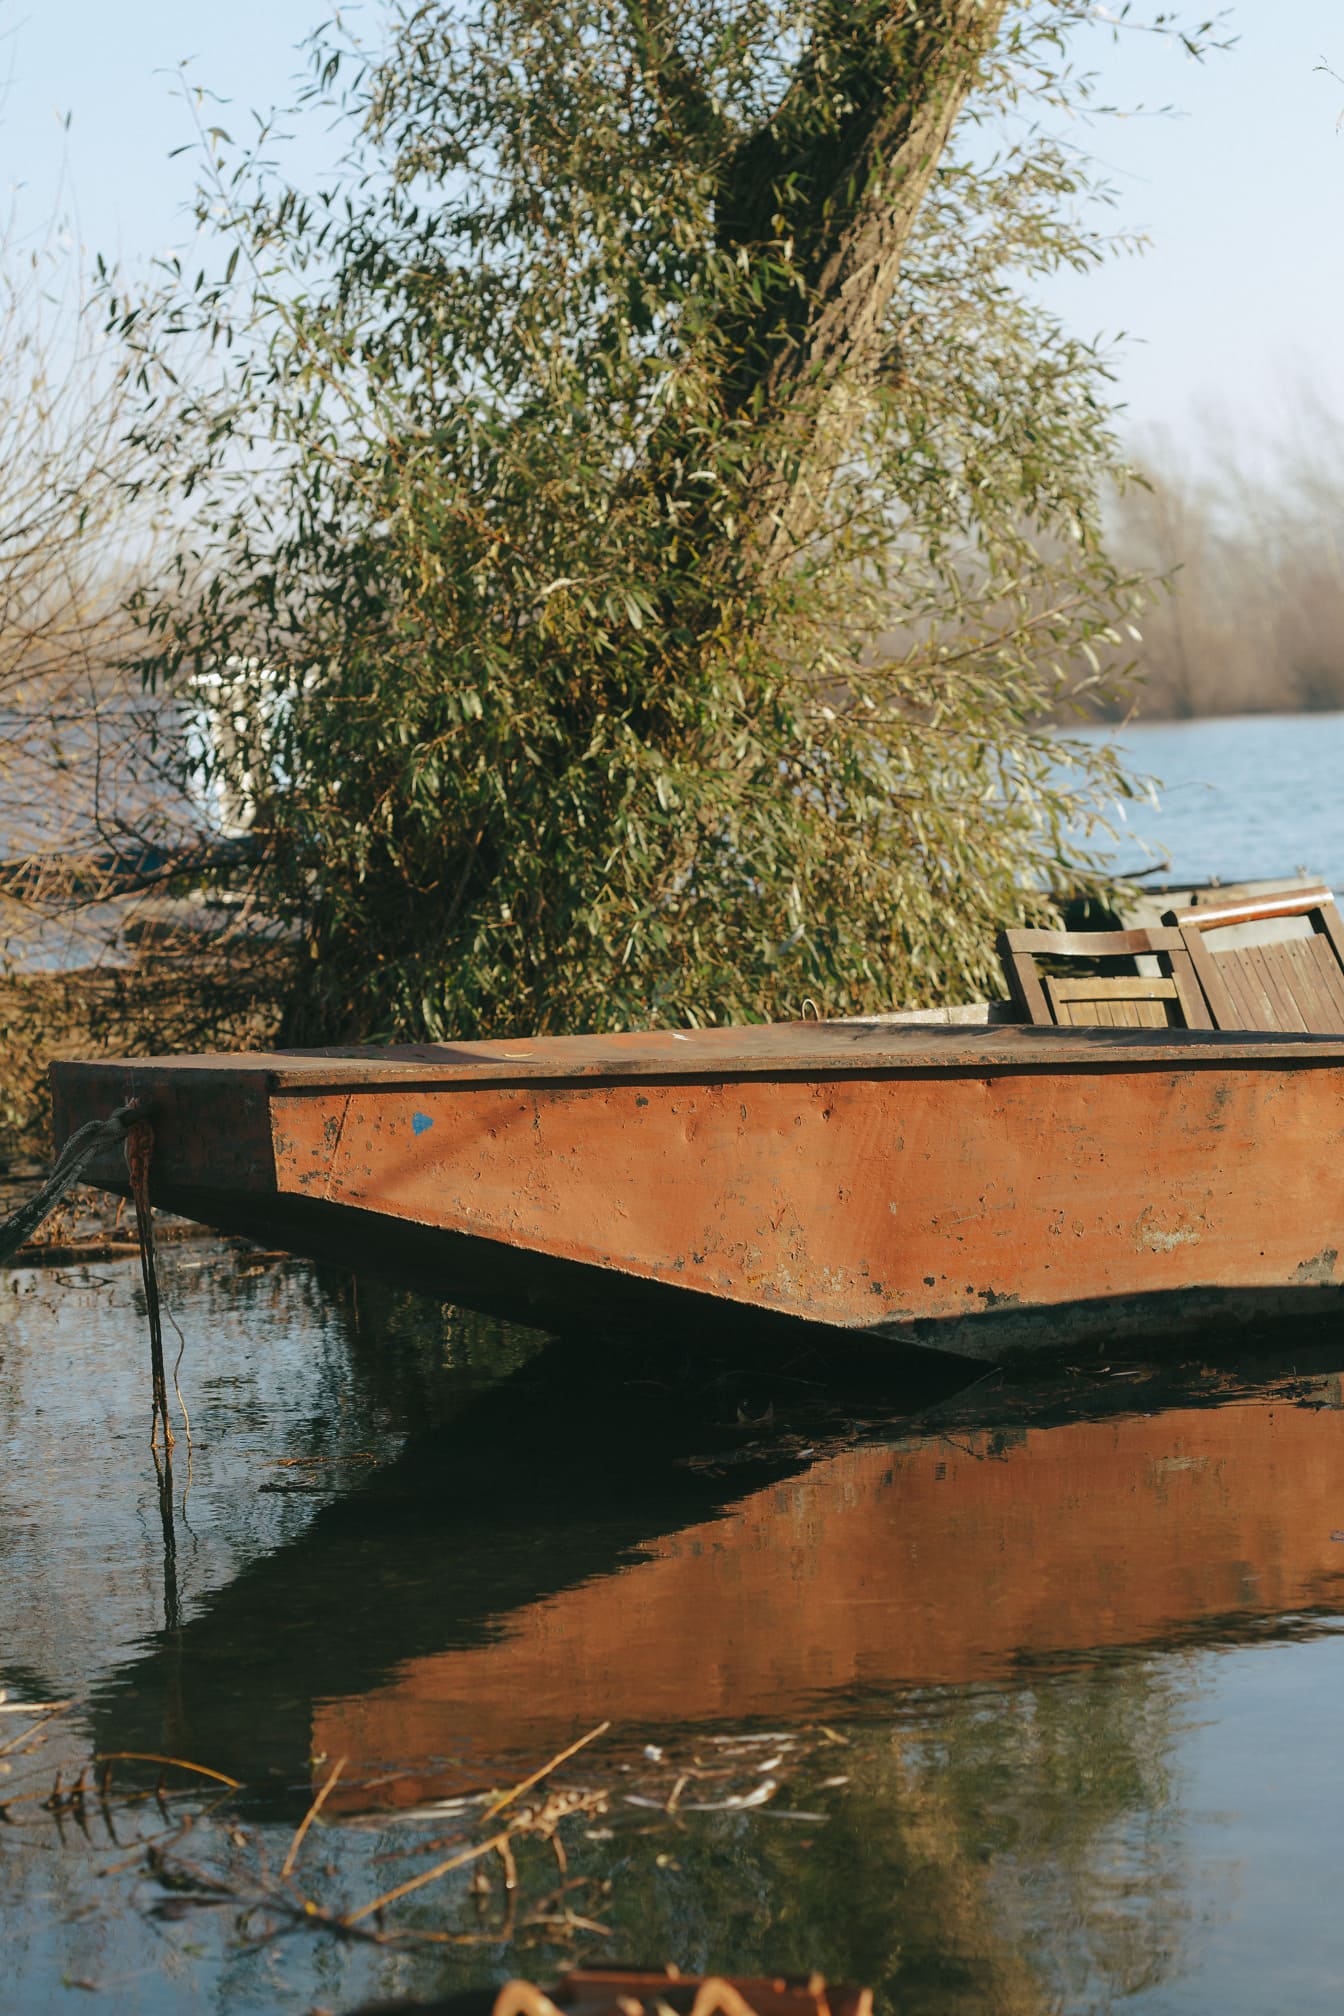 Rezavá železná rybářská loď na břehu řeky detailní fotografie